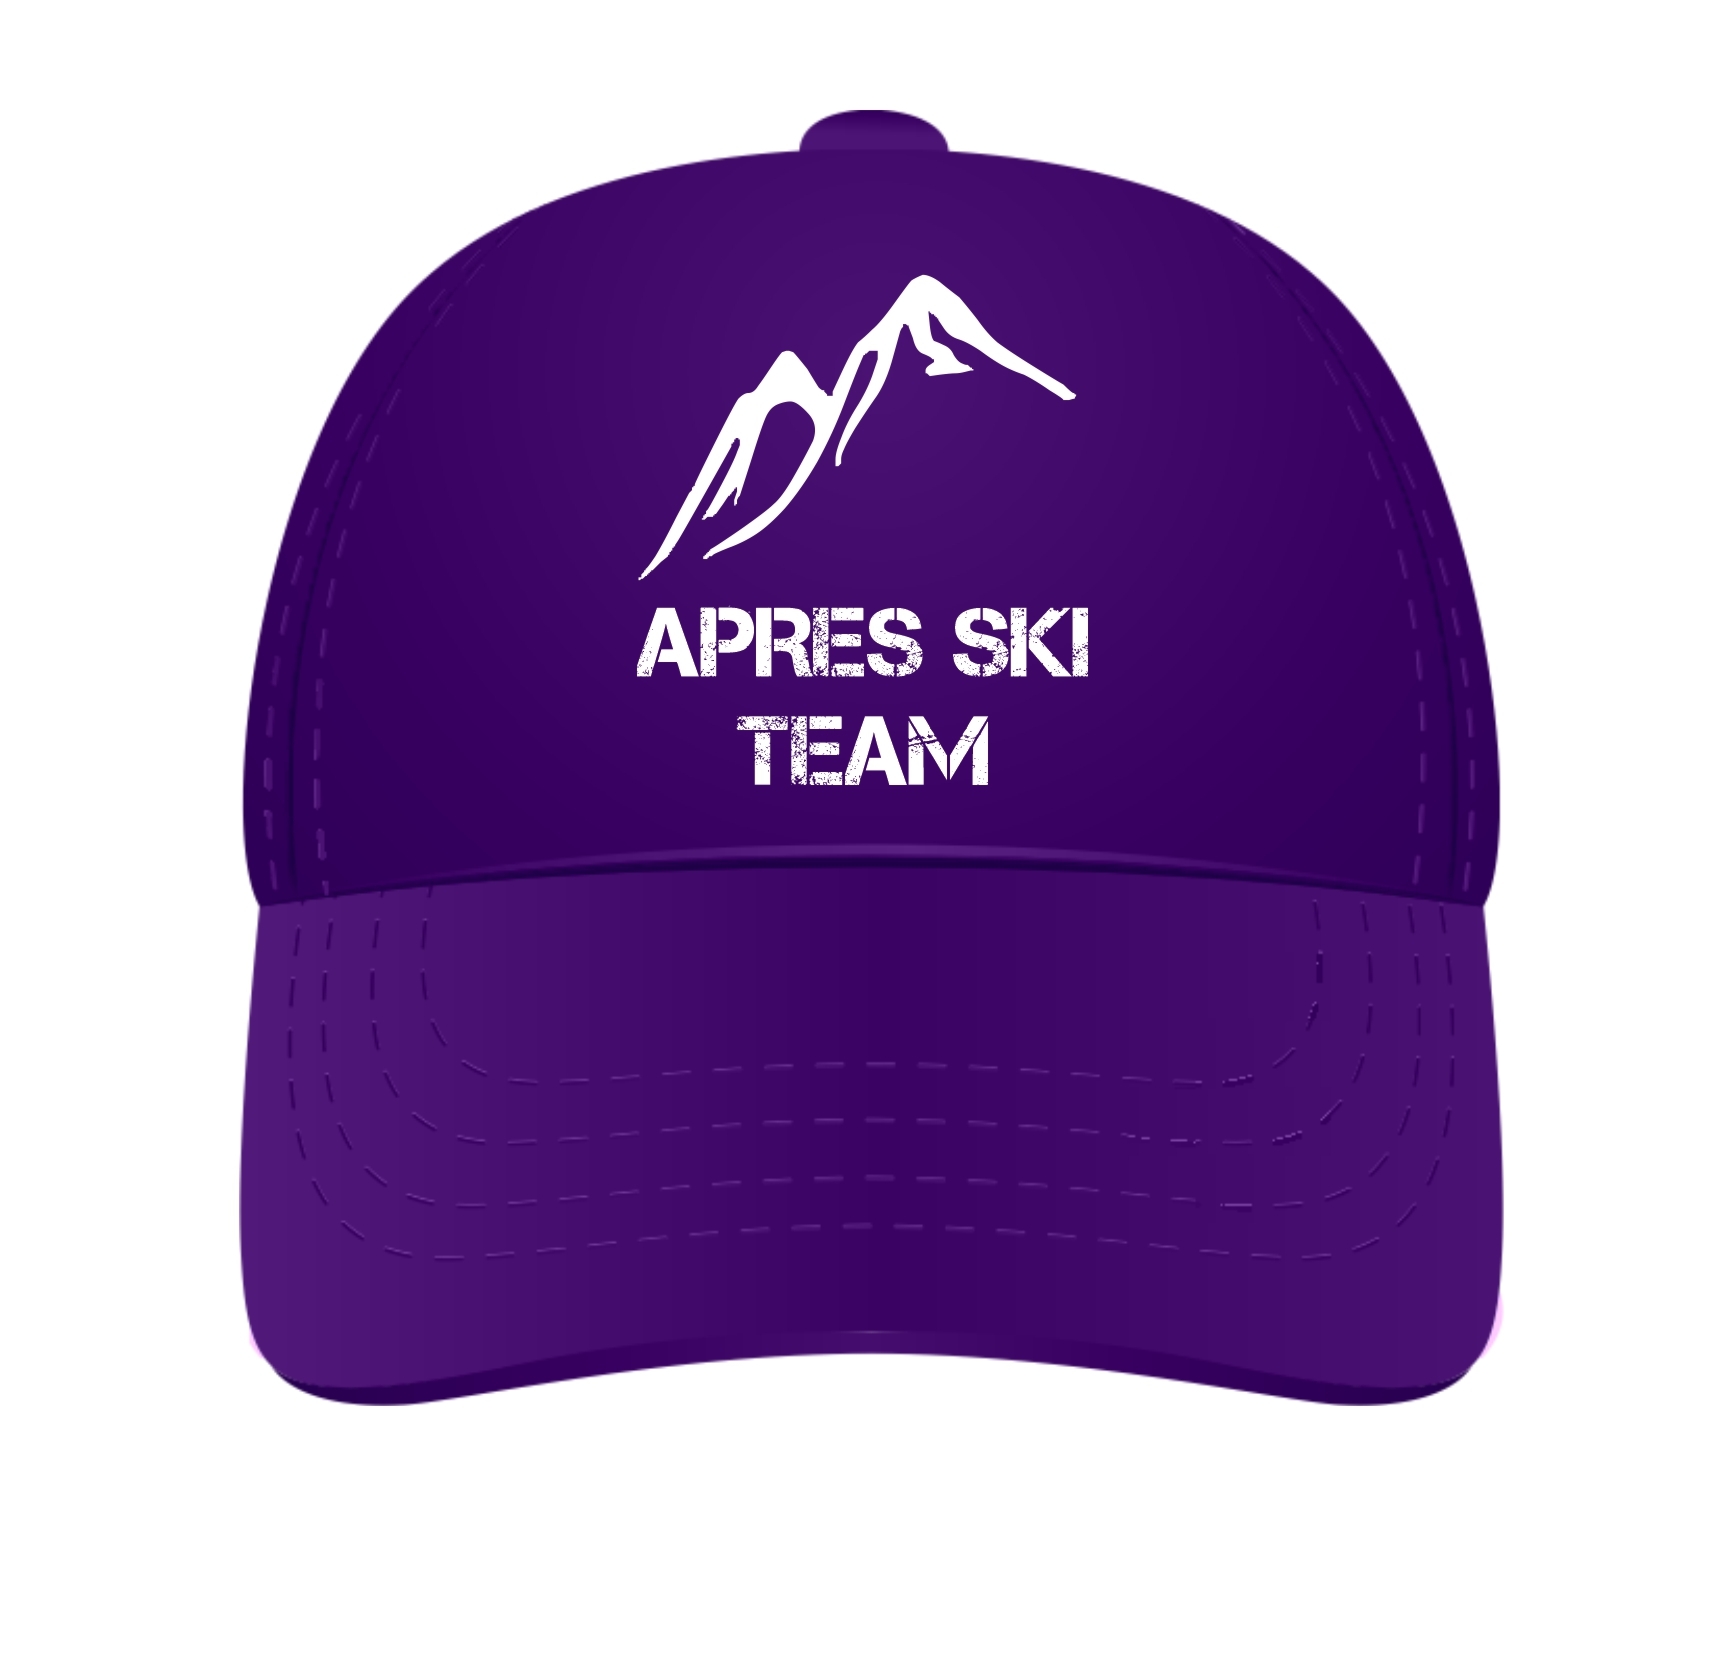 Verstelbare cap voor een apres ski party met de tekst apres ski team 